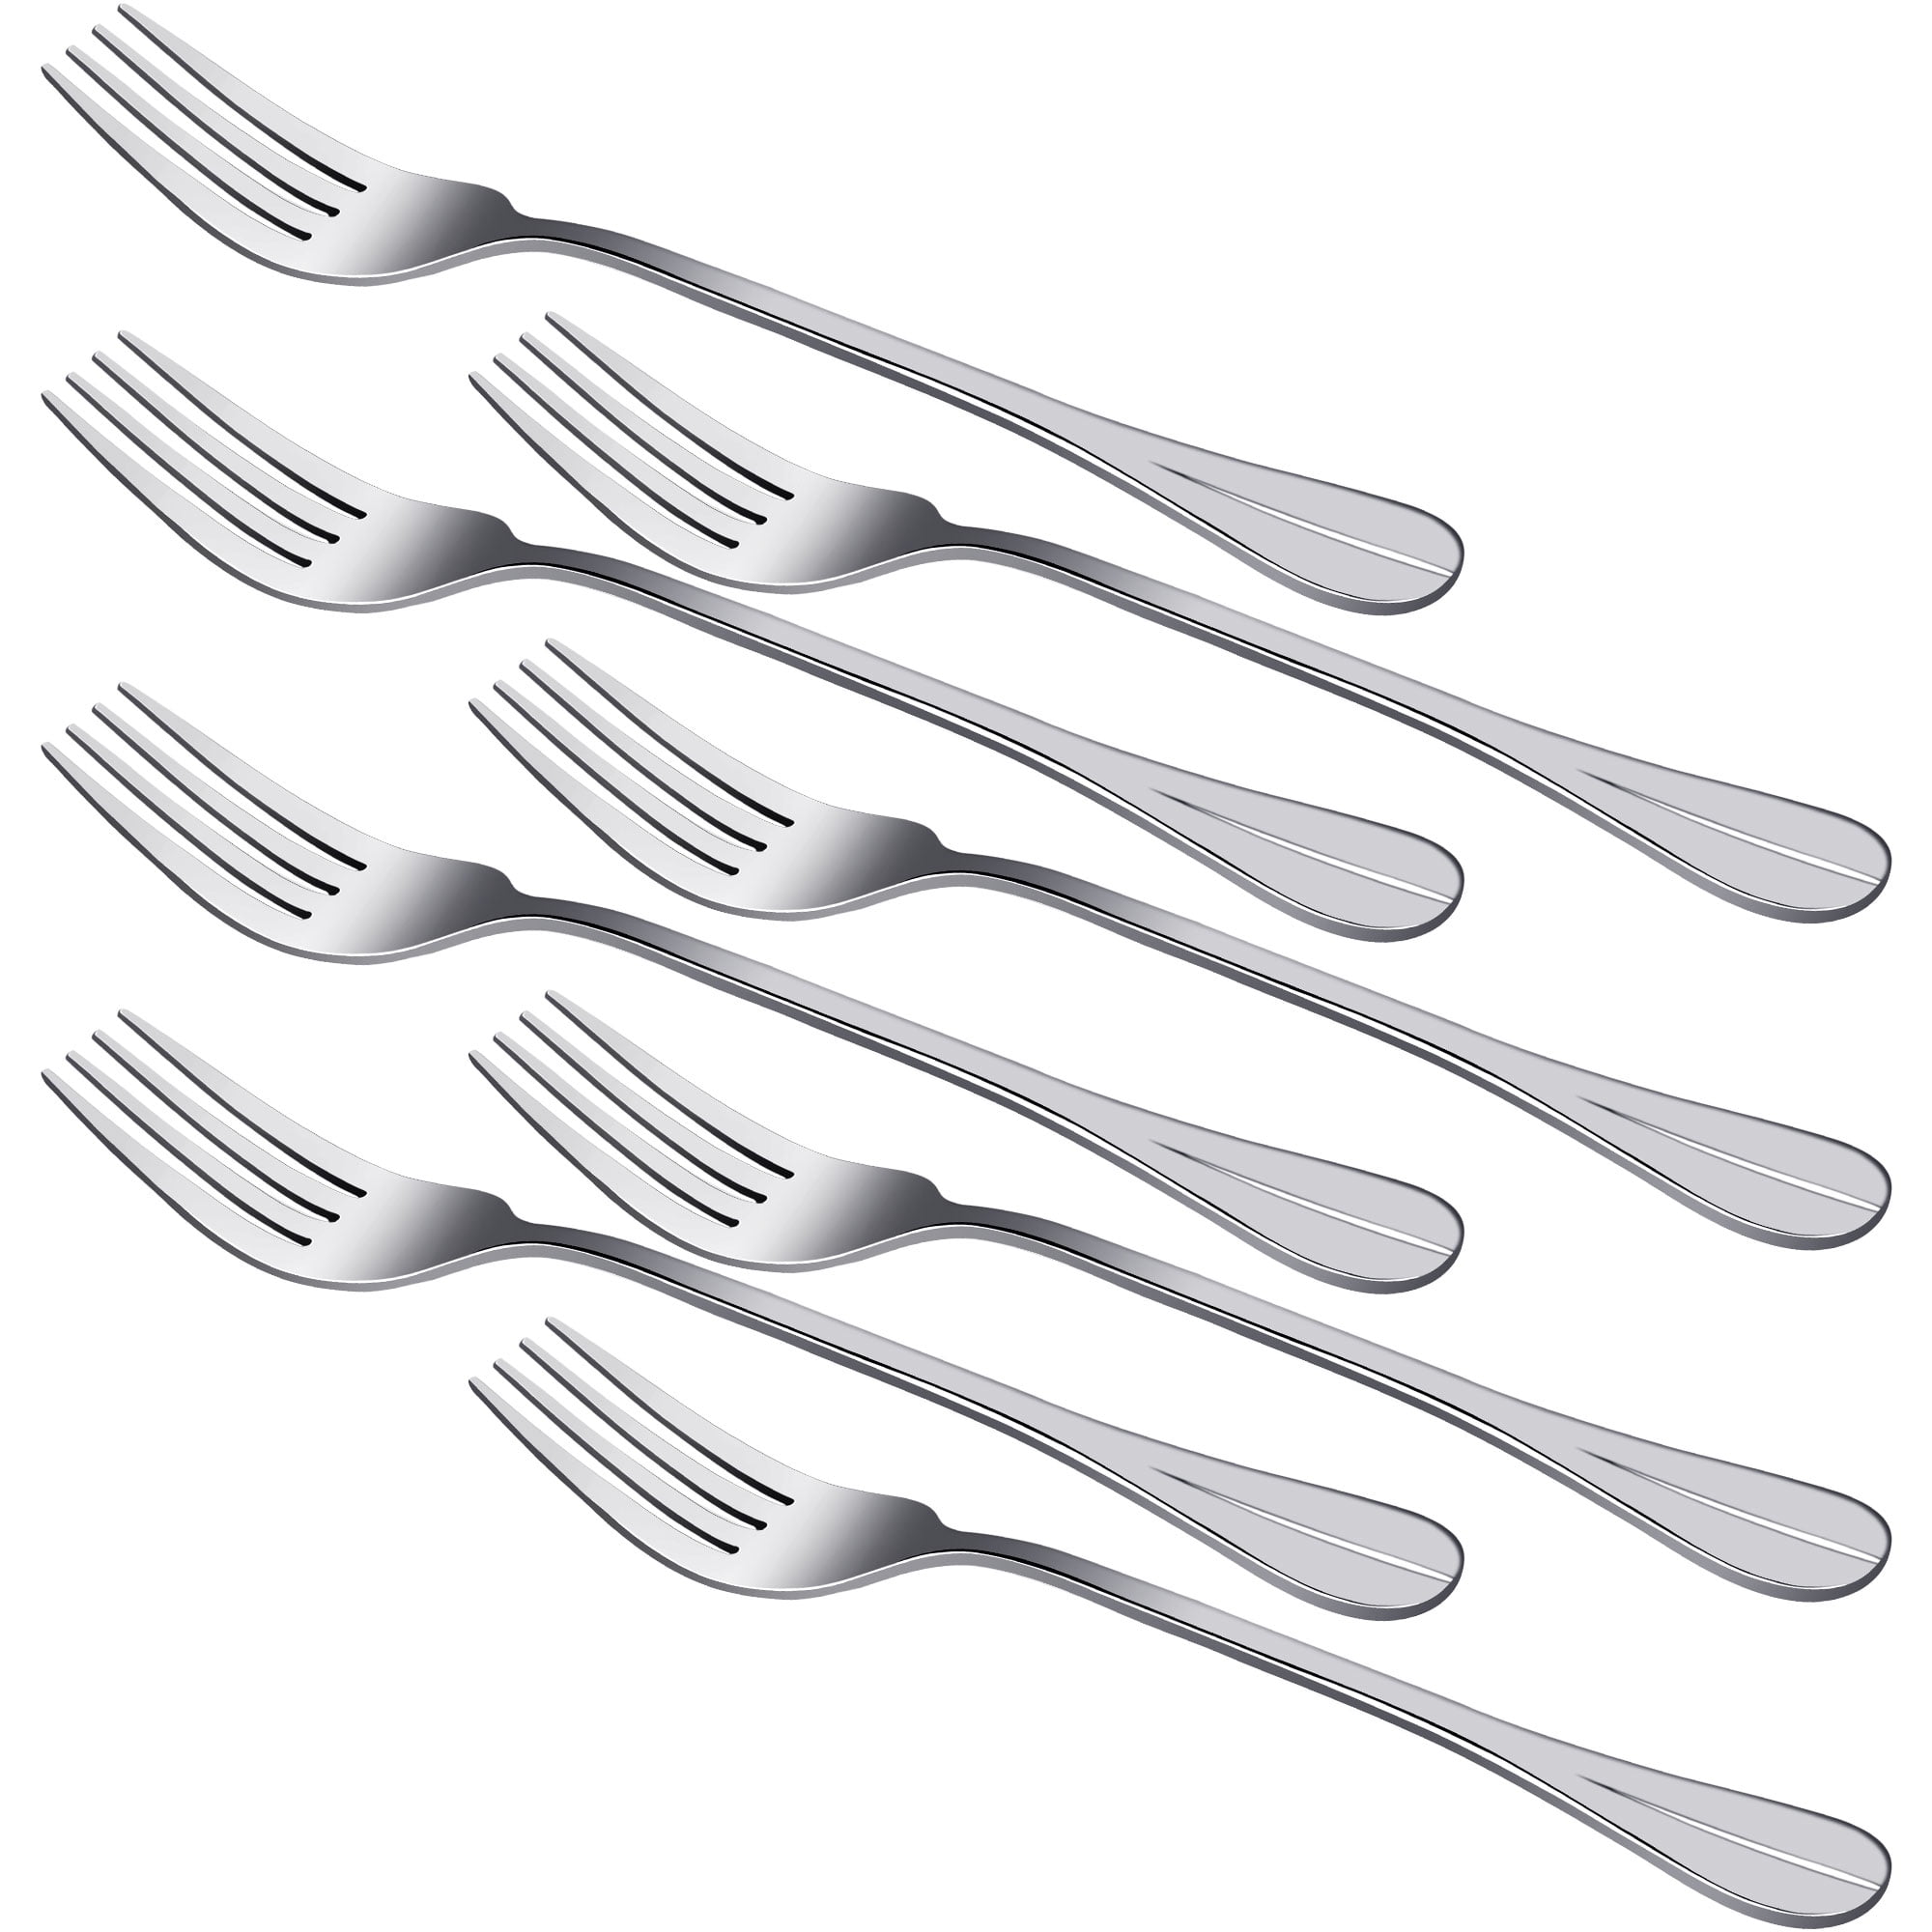 Appetizers 8Pcs Table Forks Dinner Flatware Stainless Steel Forks Set for Salad Desserts 